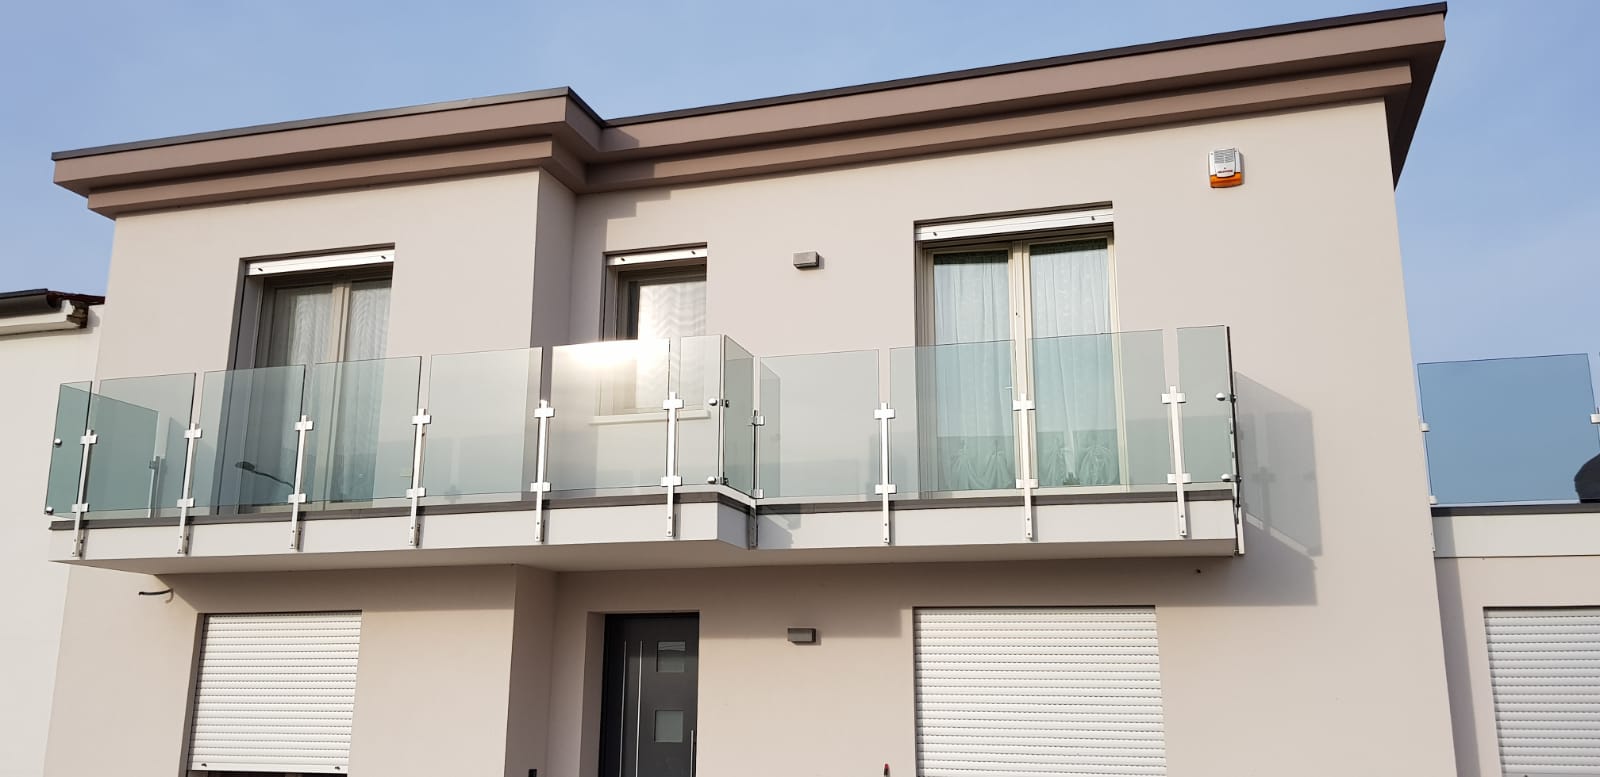 Ringhiere per balconi - Turra Lavorazione e Commercio Inox Ferro Alluminio